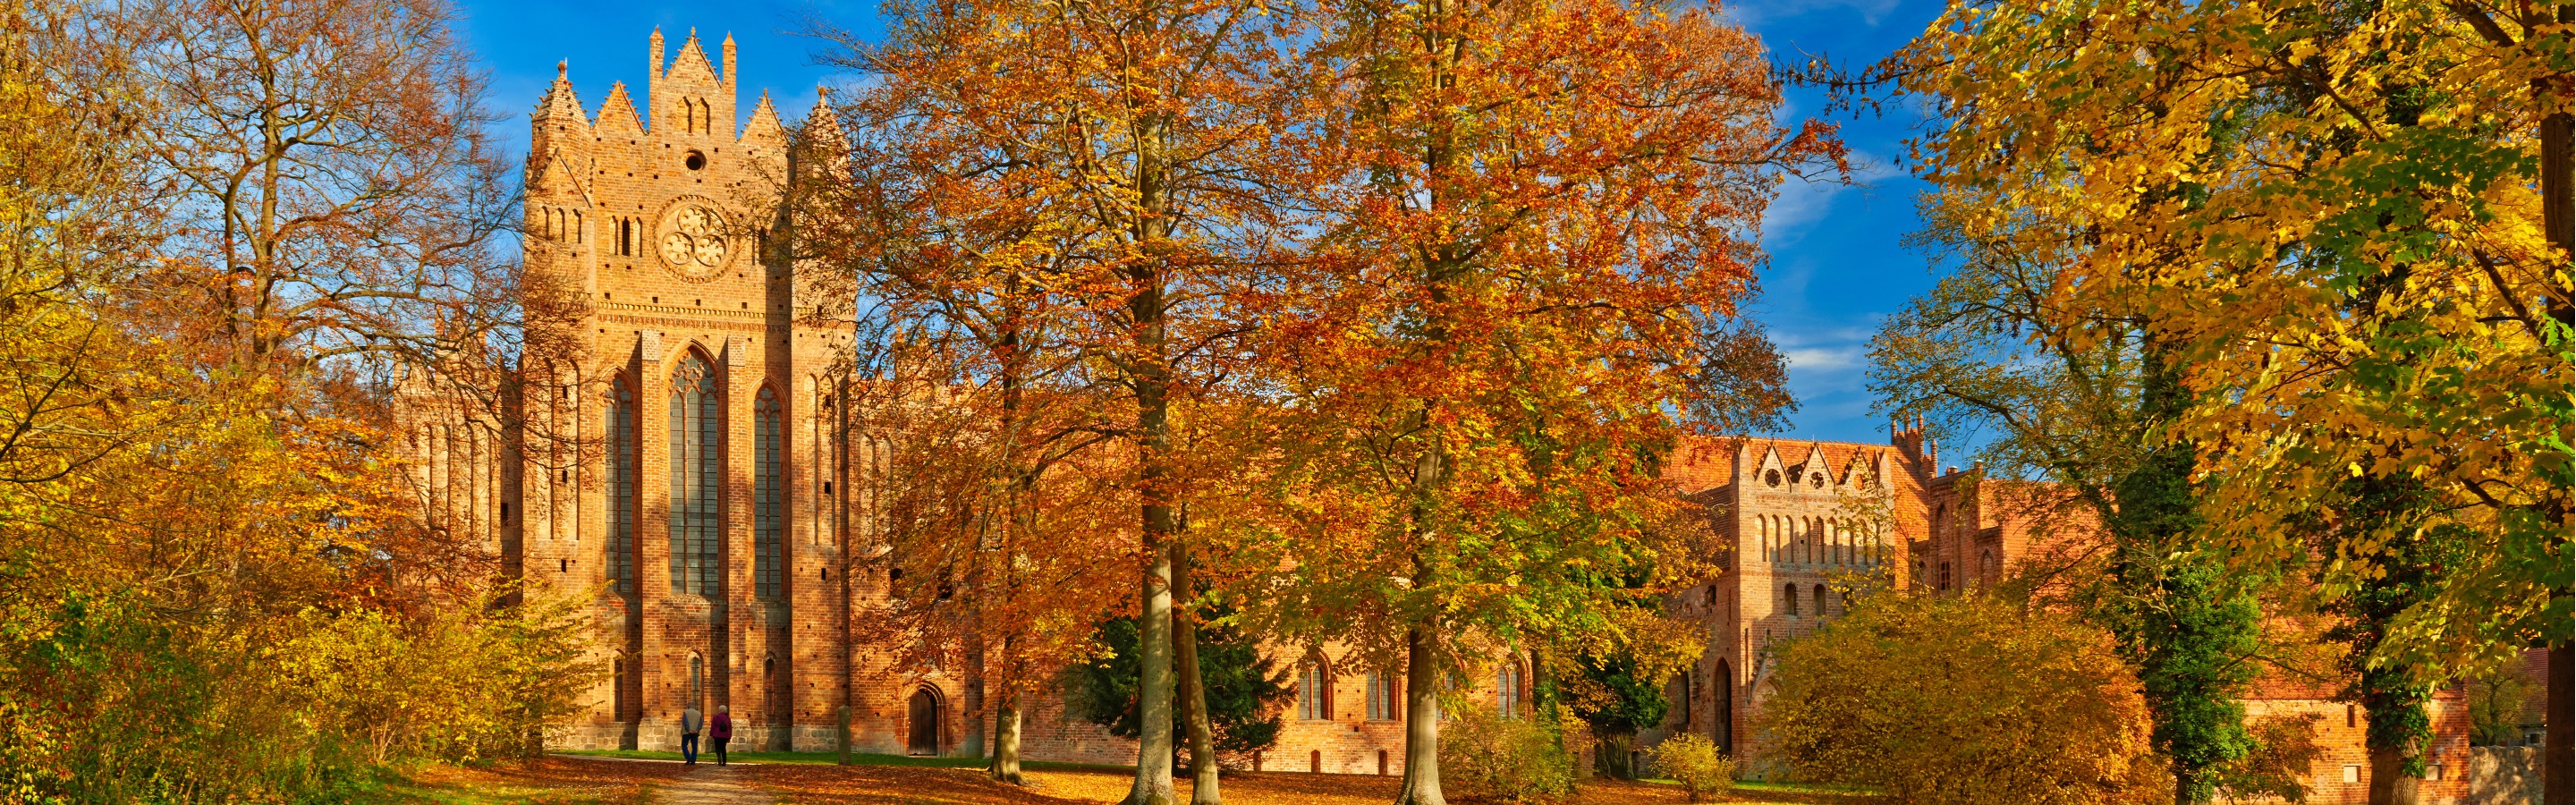 6 ziemlich gute Tipps für den Herbst in Brandenburg